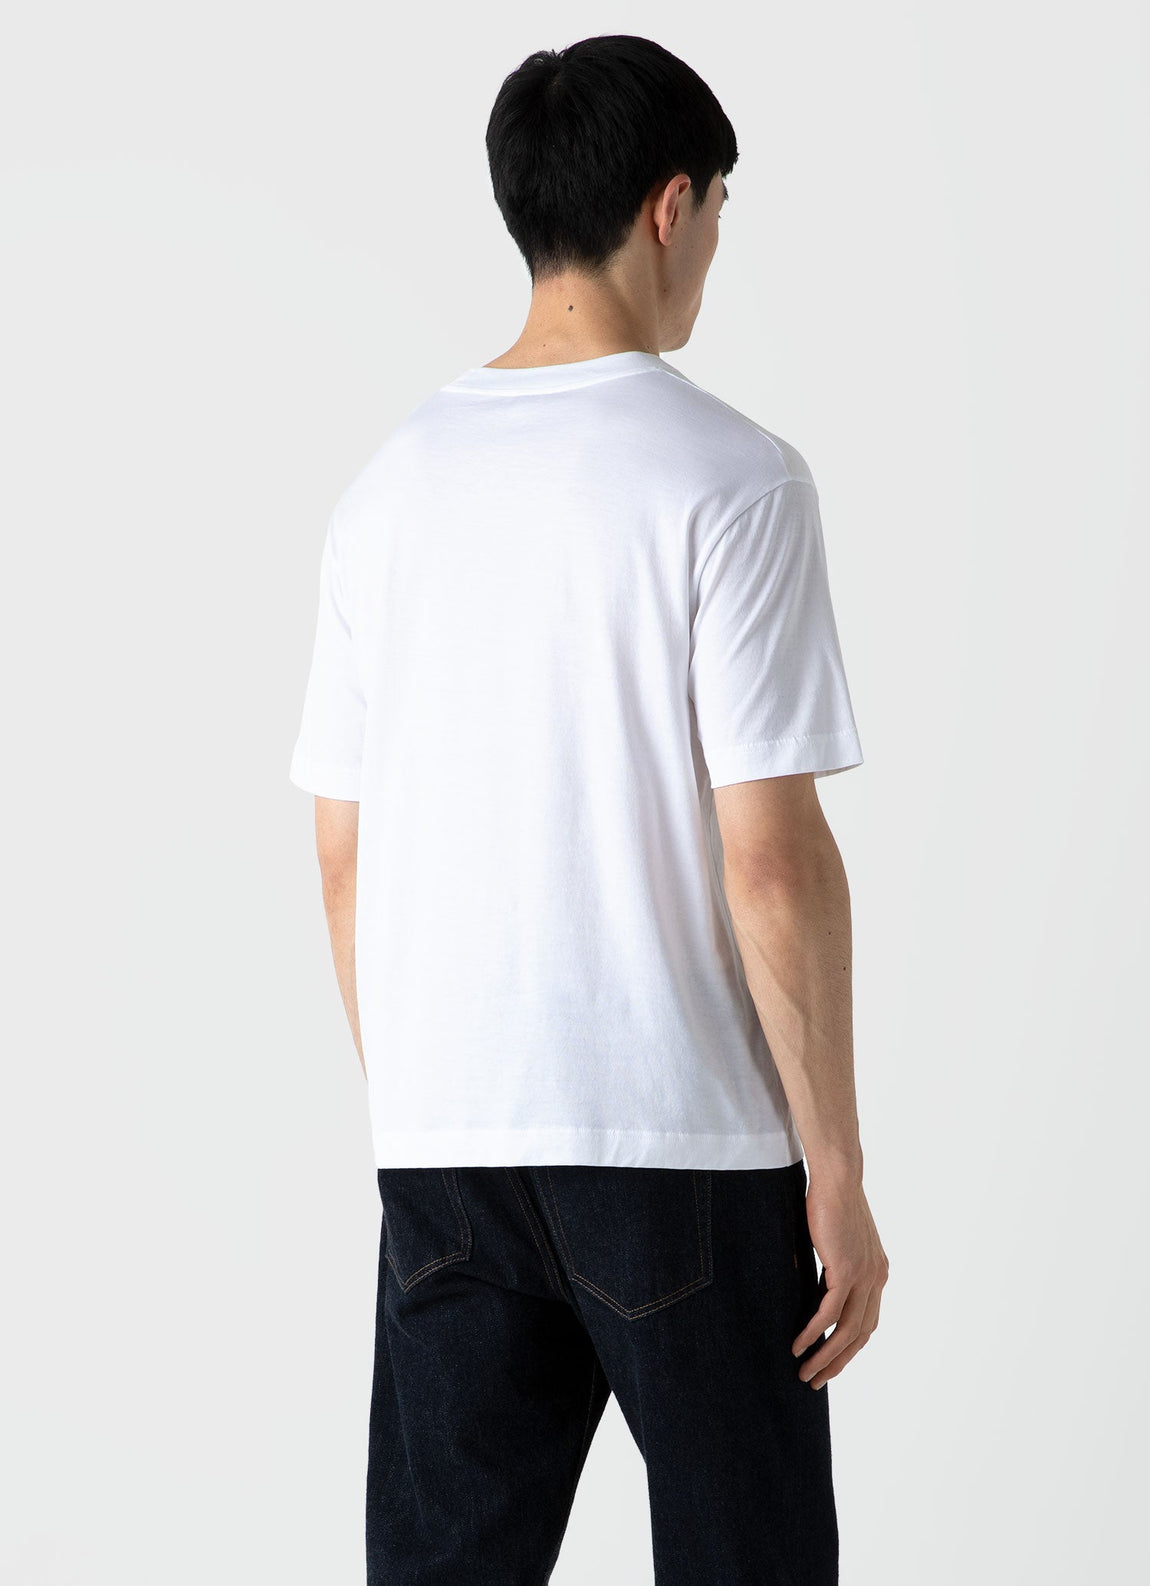 Men's Mock Neck T-shirt in White | Sunspel